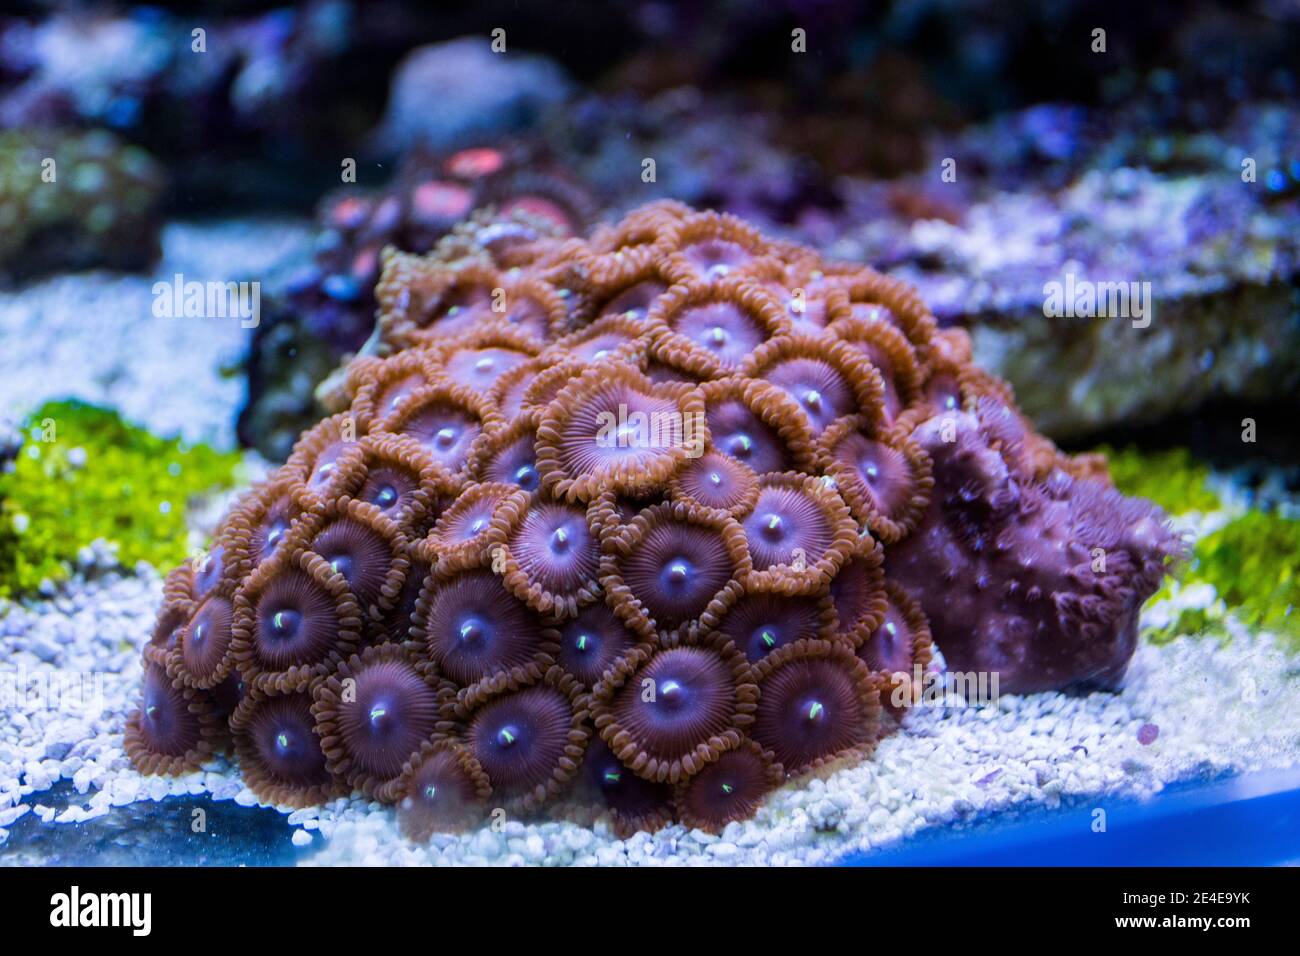 Zoanthus polyps colony in marine saltwater aquarium Stock Photo